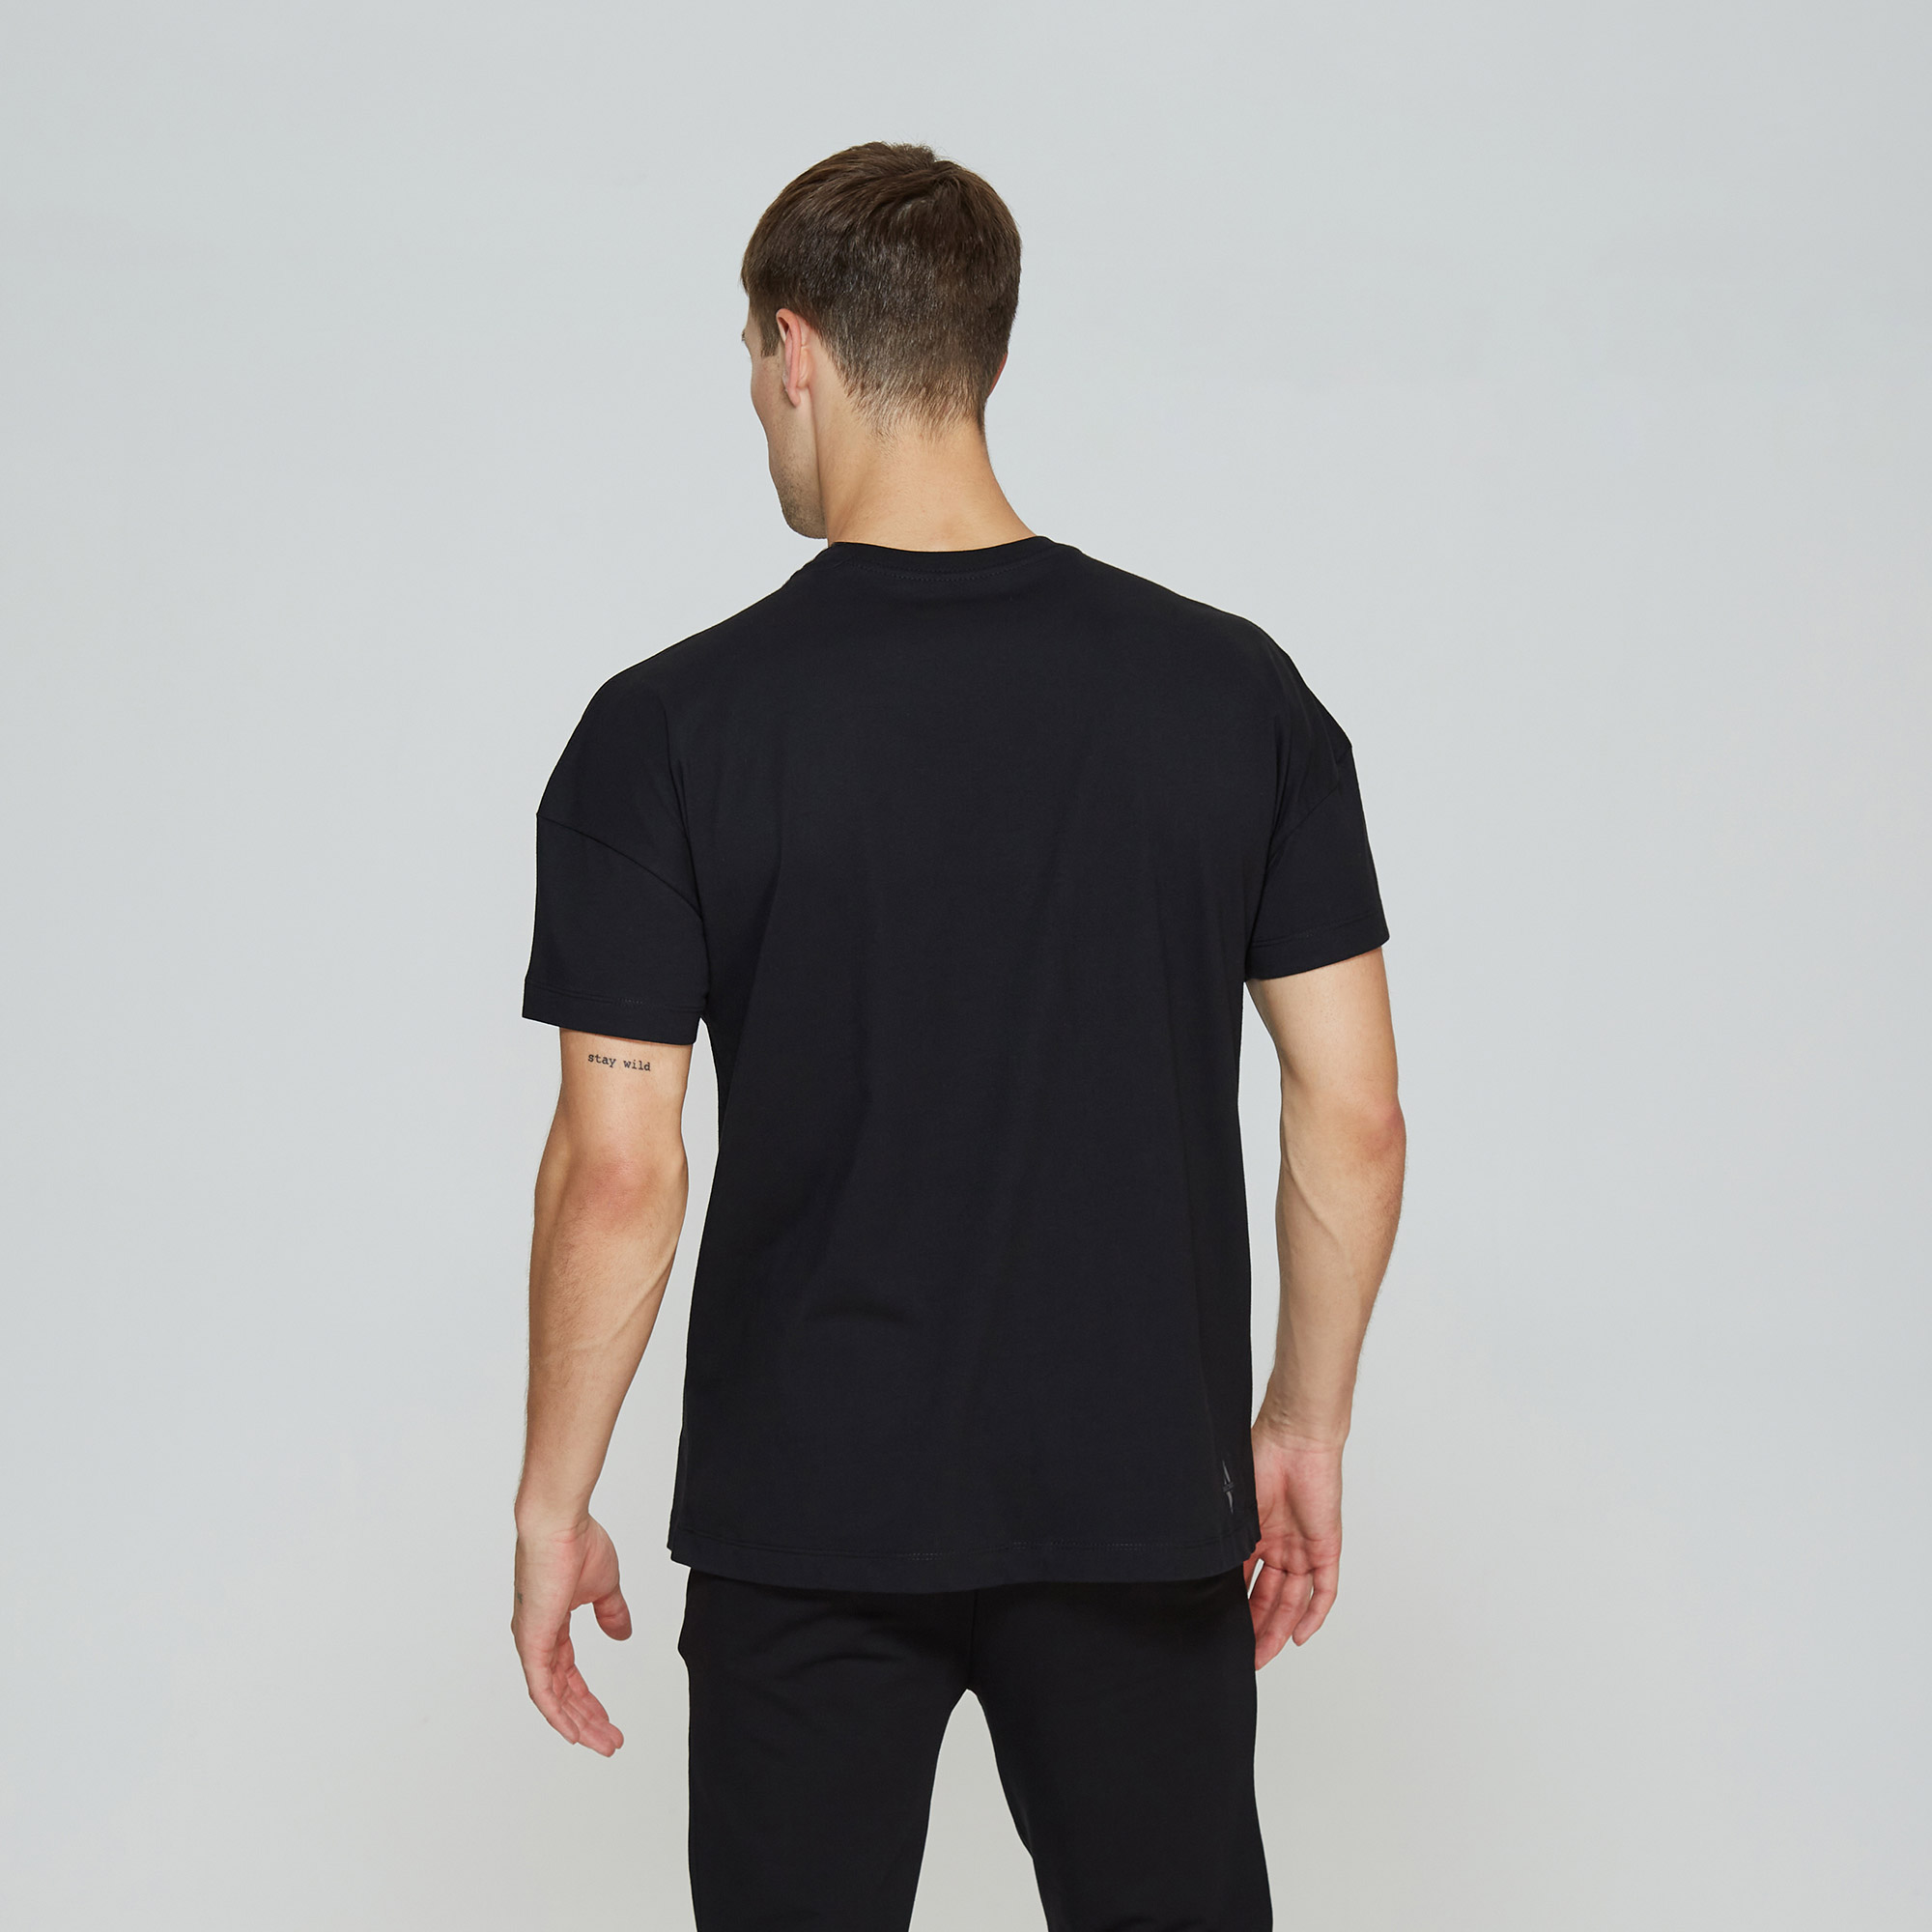 Skechers Graphic Tee Big Logo Erkek Siyah T-Shirt